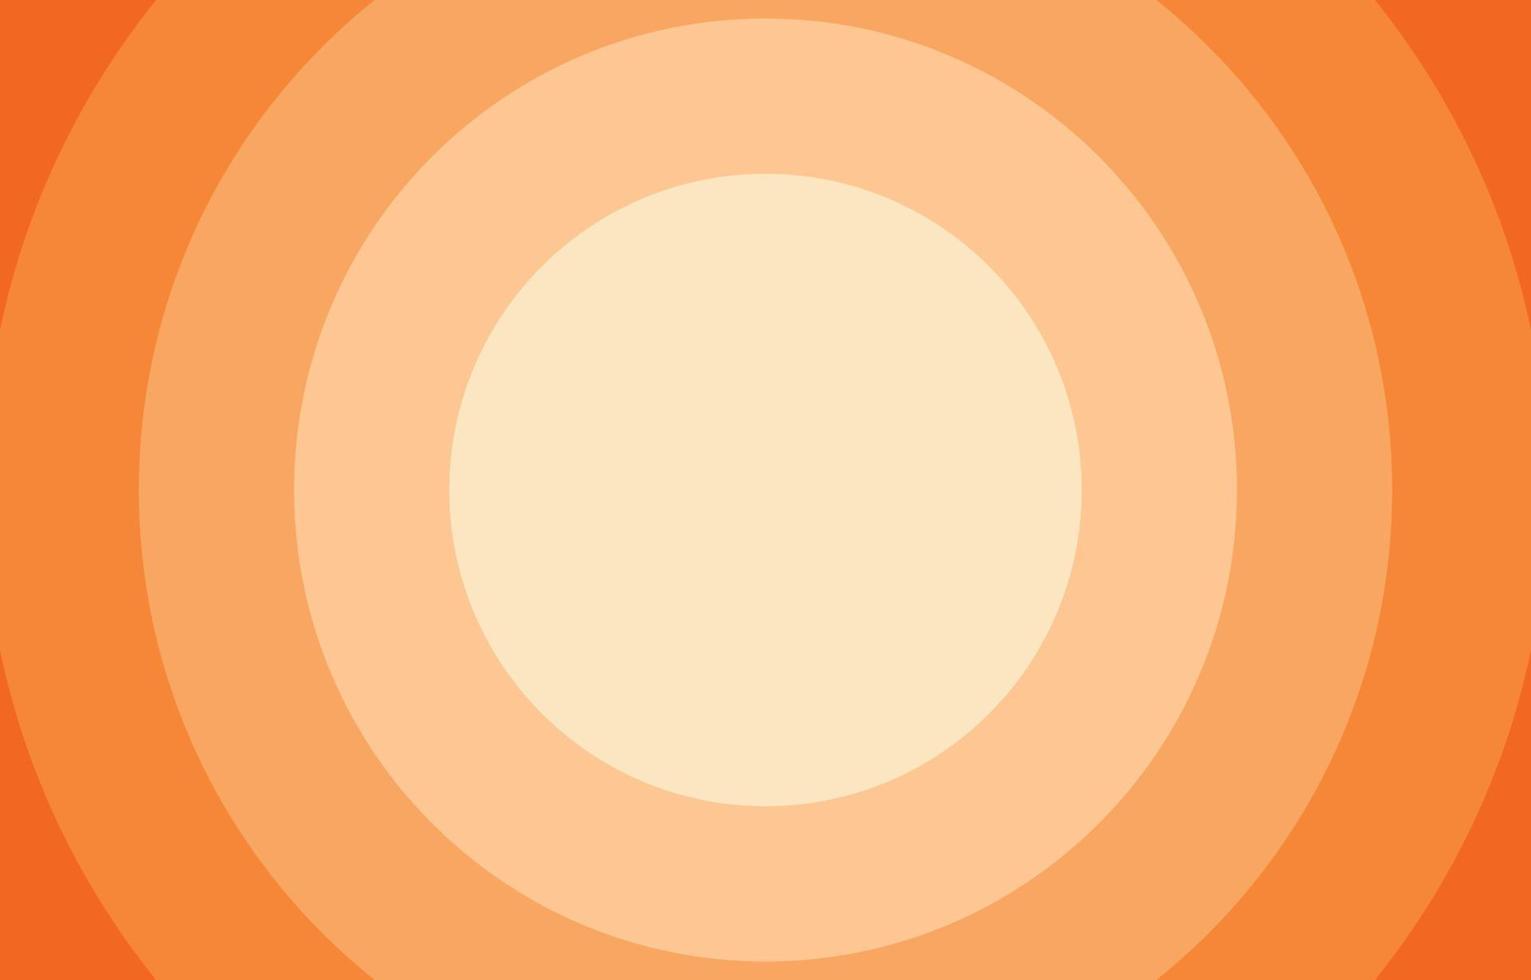 oranje cirkel achtergrond licht tot donker gradatie, kopieer ruimte, vers concept, seizoenen, herfst, zomer wallpapers vector illustratie